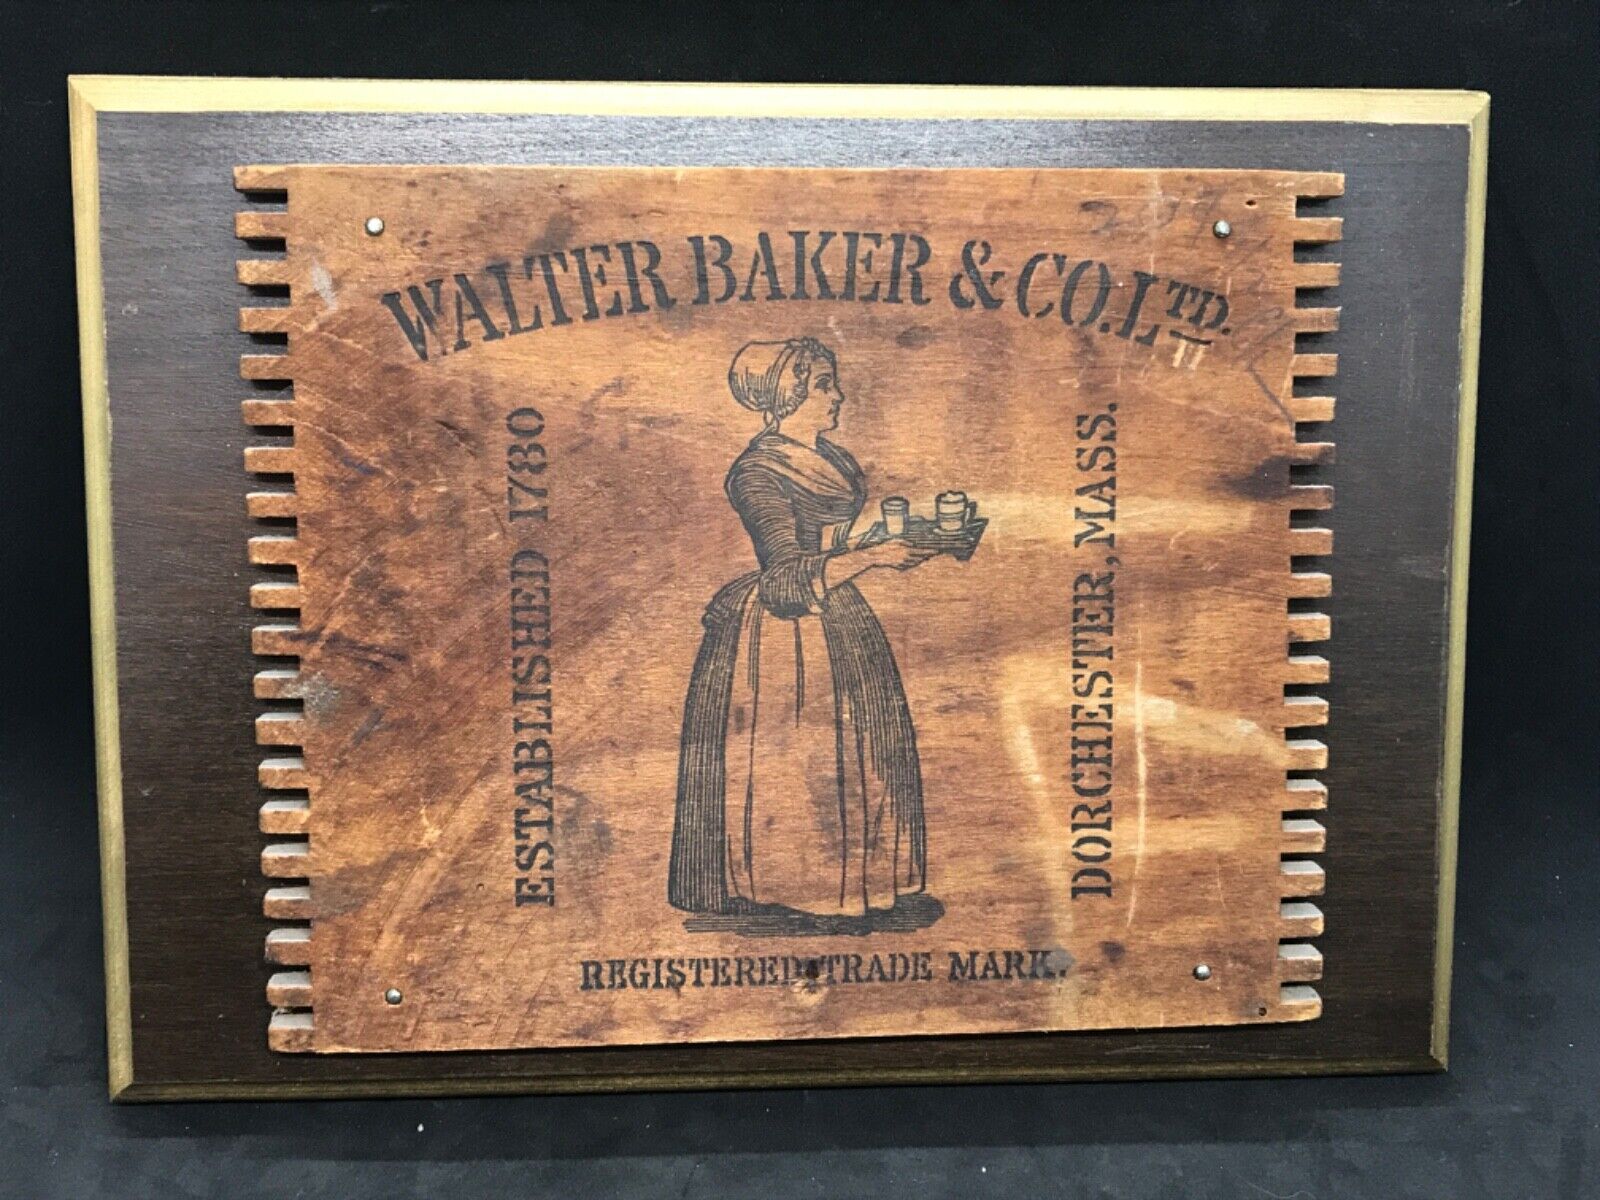 Vintage Walter Baker & Co. Wood Display Board